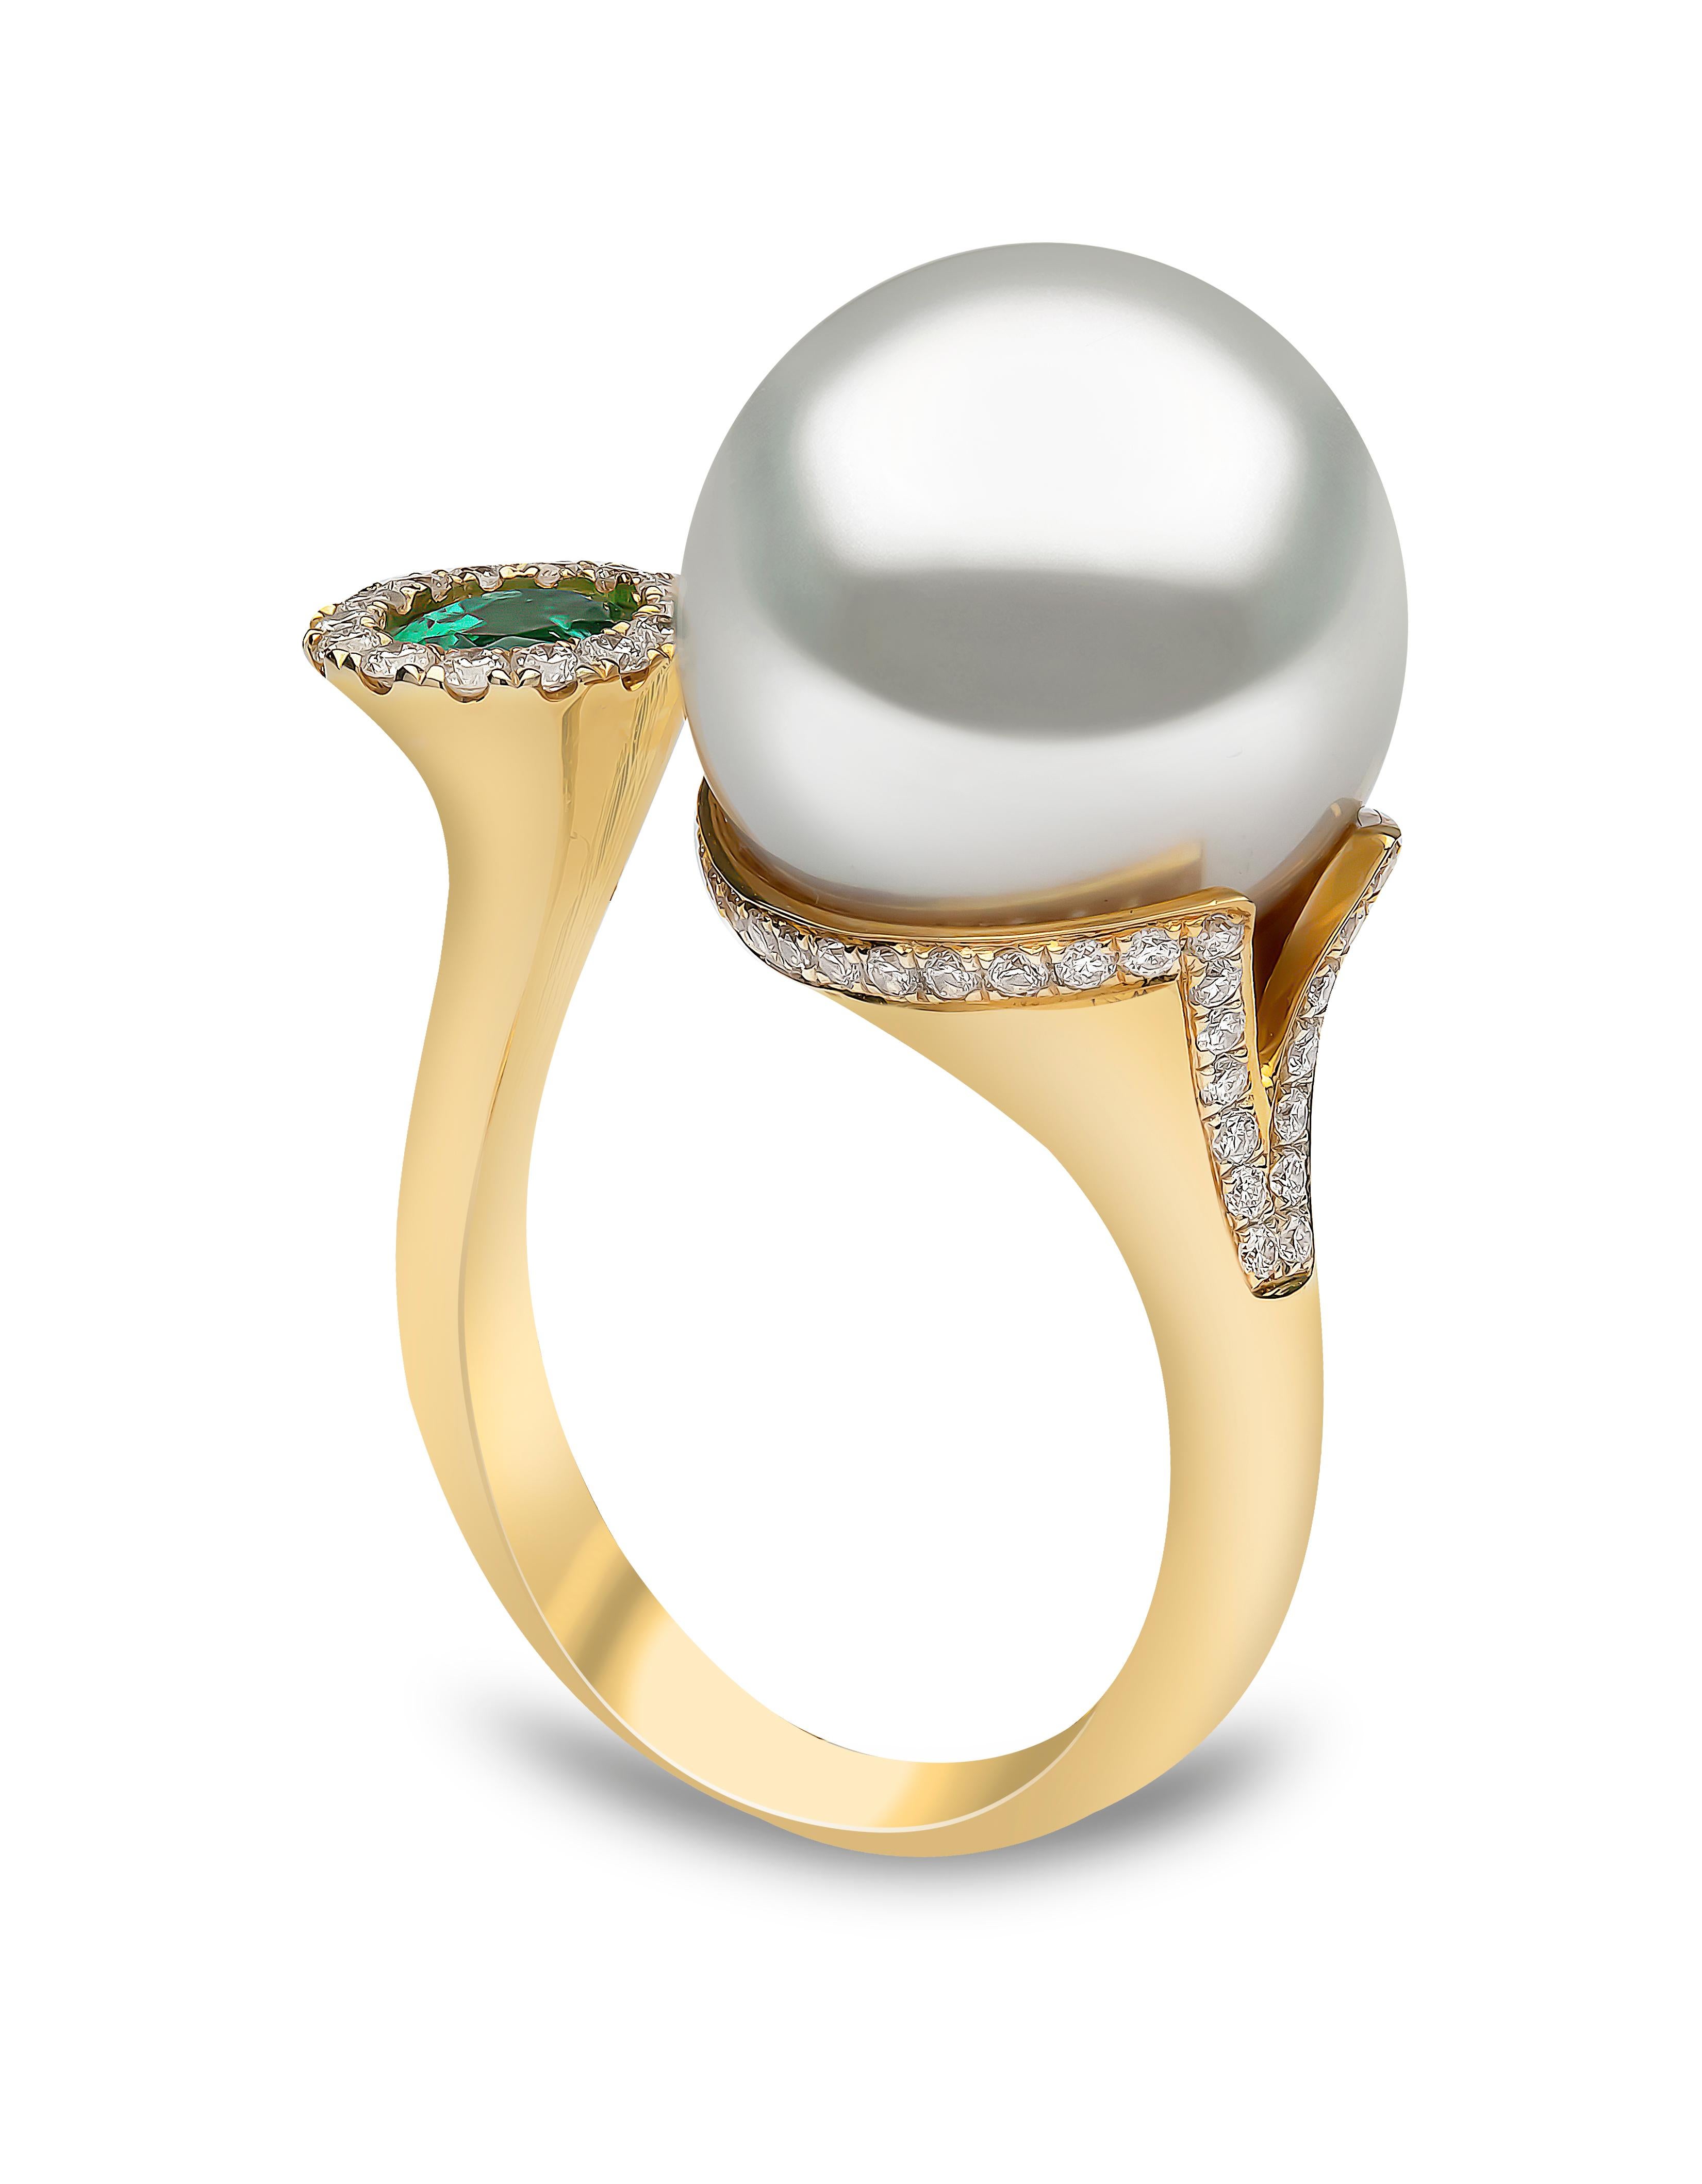 Round Cut Yoko London South Sea Pearl, Emerald and Diamond Ring in 18 Karat Yellow Gold